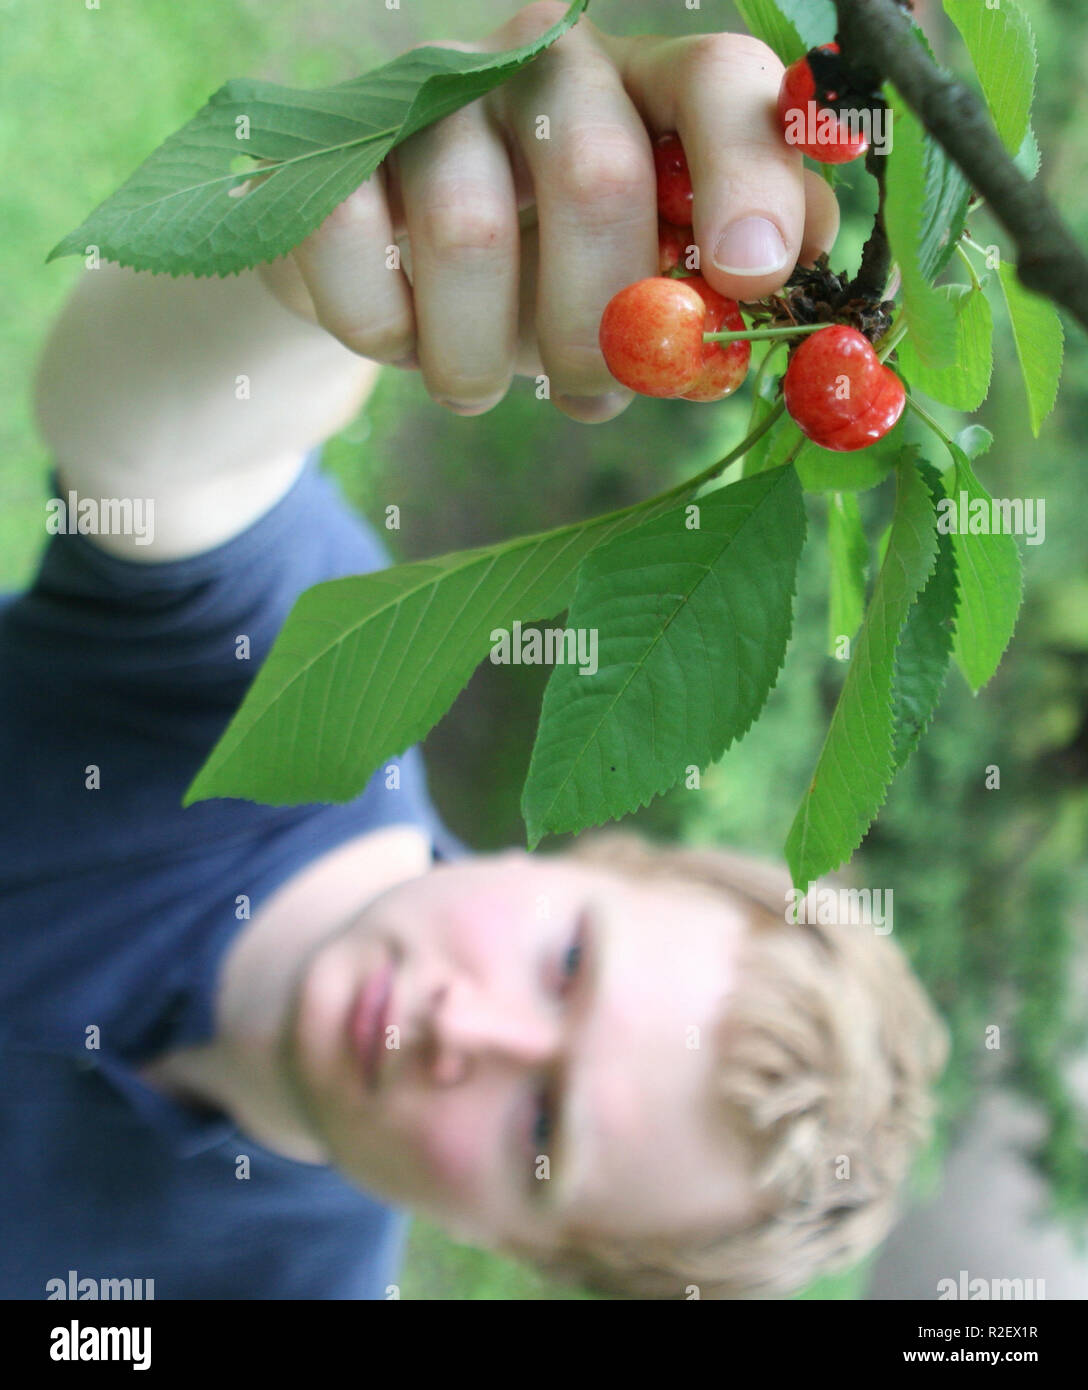 picking cherries 2 Stock Photo